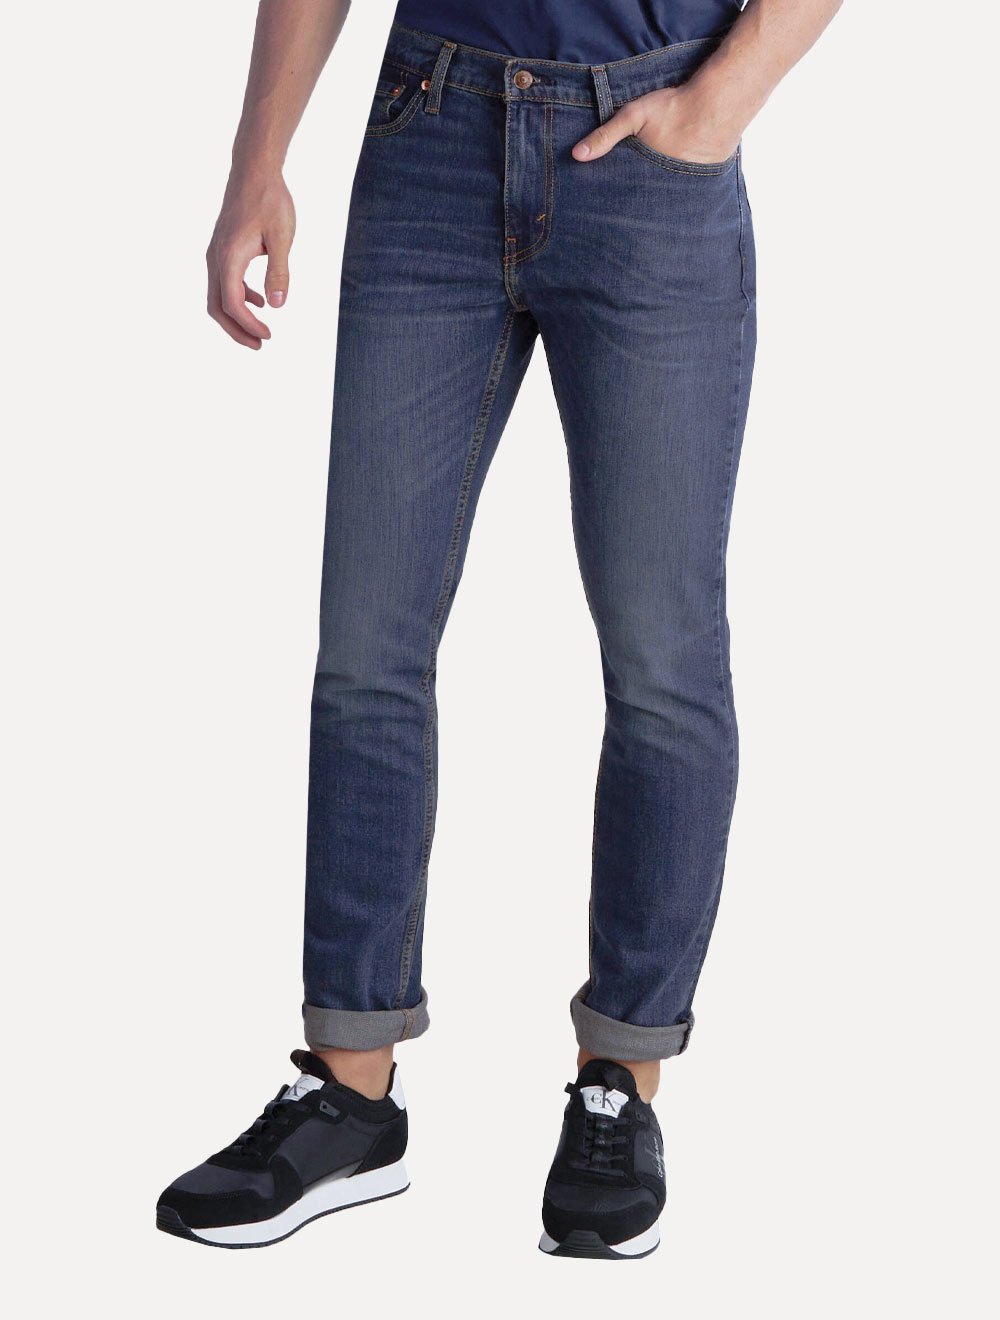 Calça Jeans Levi's 501 Original Masculina Jeans Blue Escuro